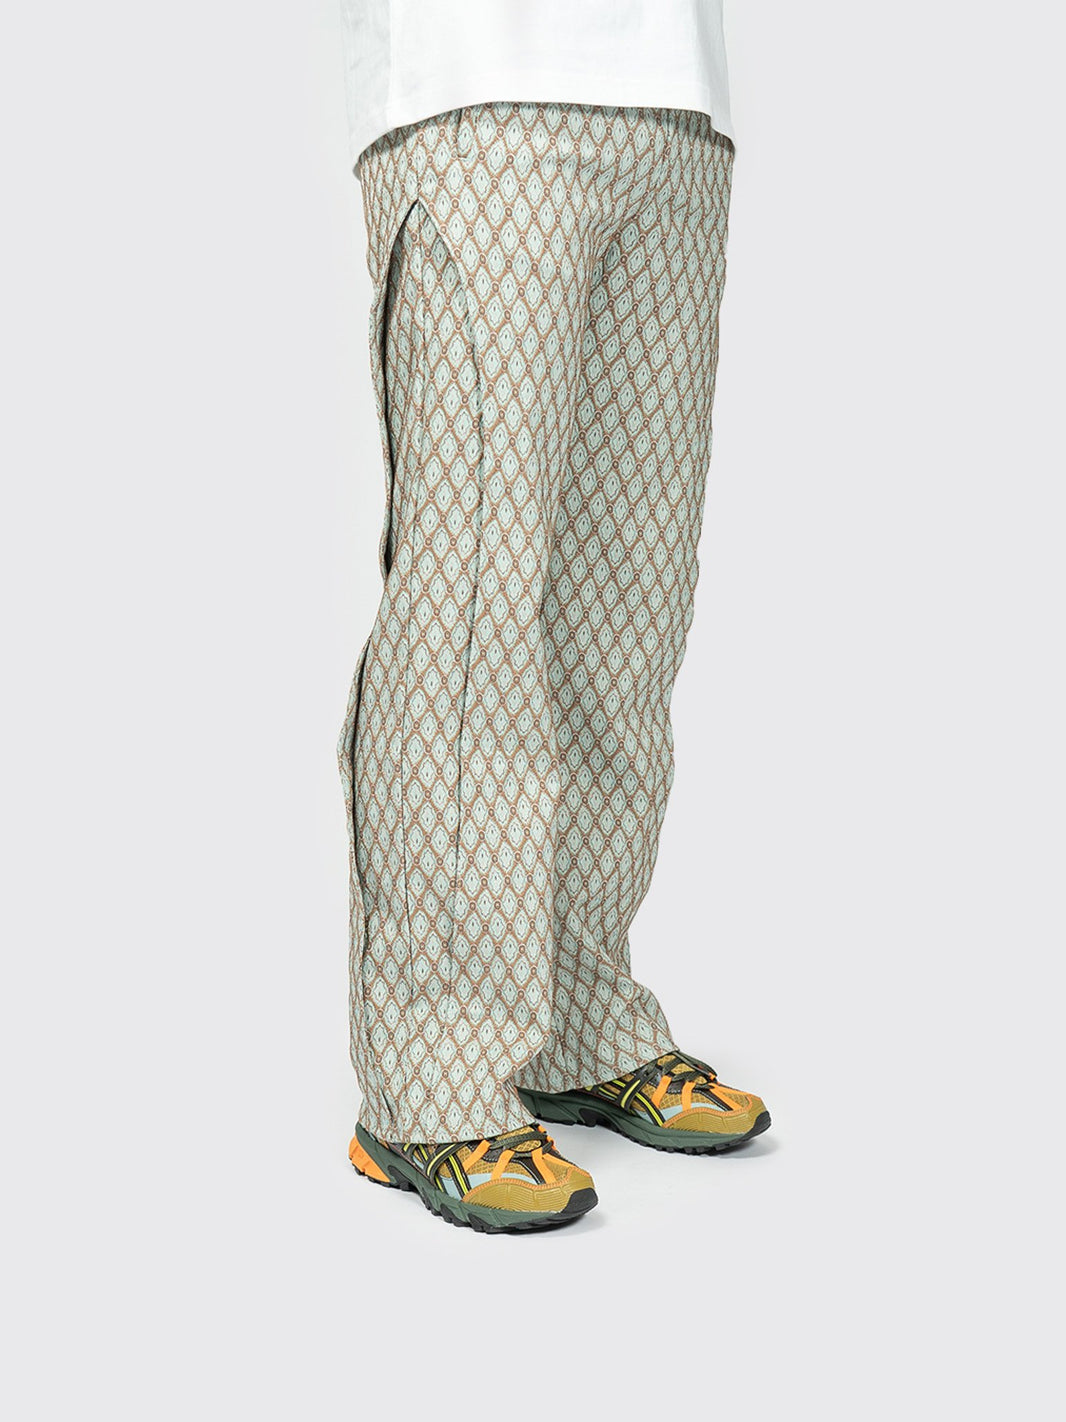 Products by Louis Vuitton: Monogram Jacquard Jogging Pants